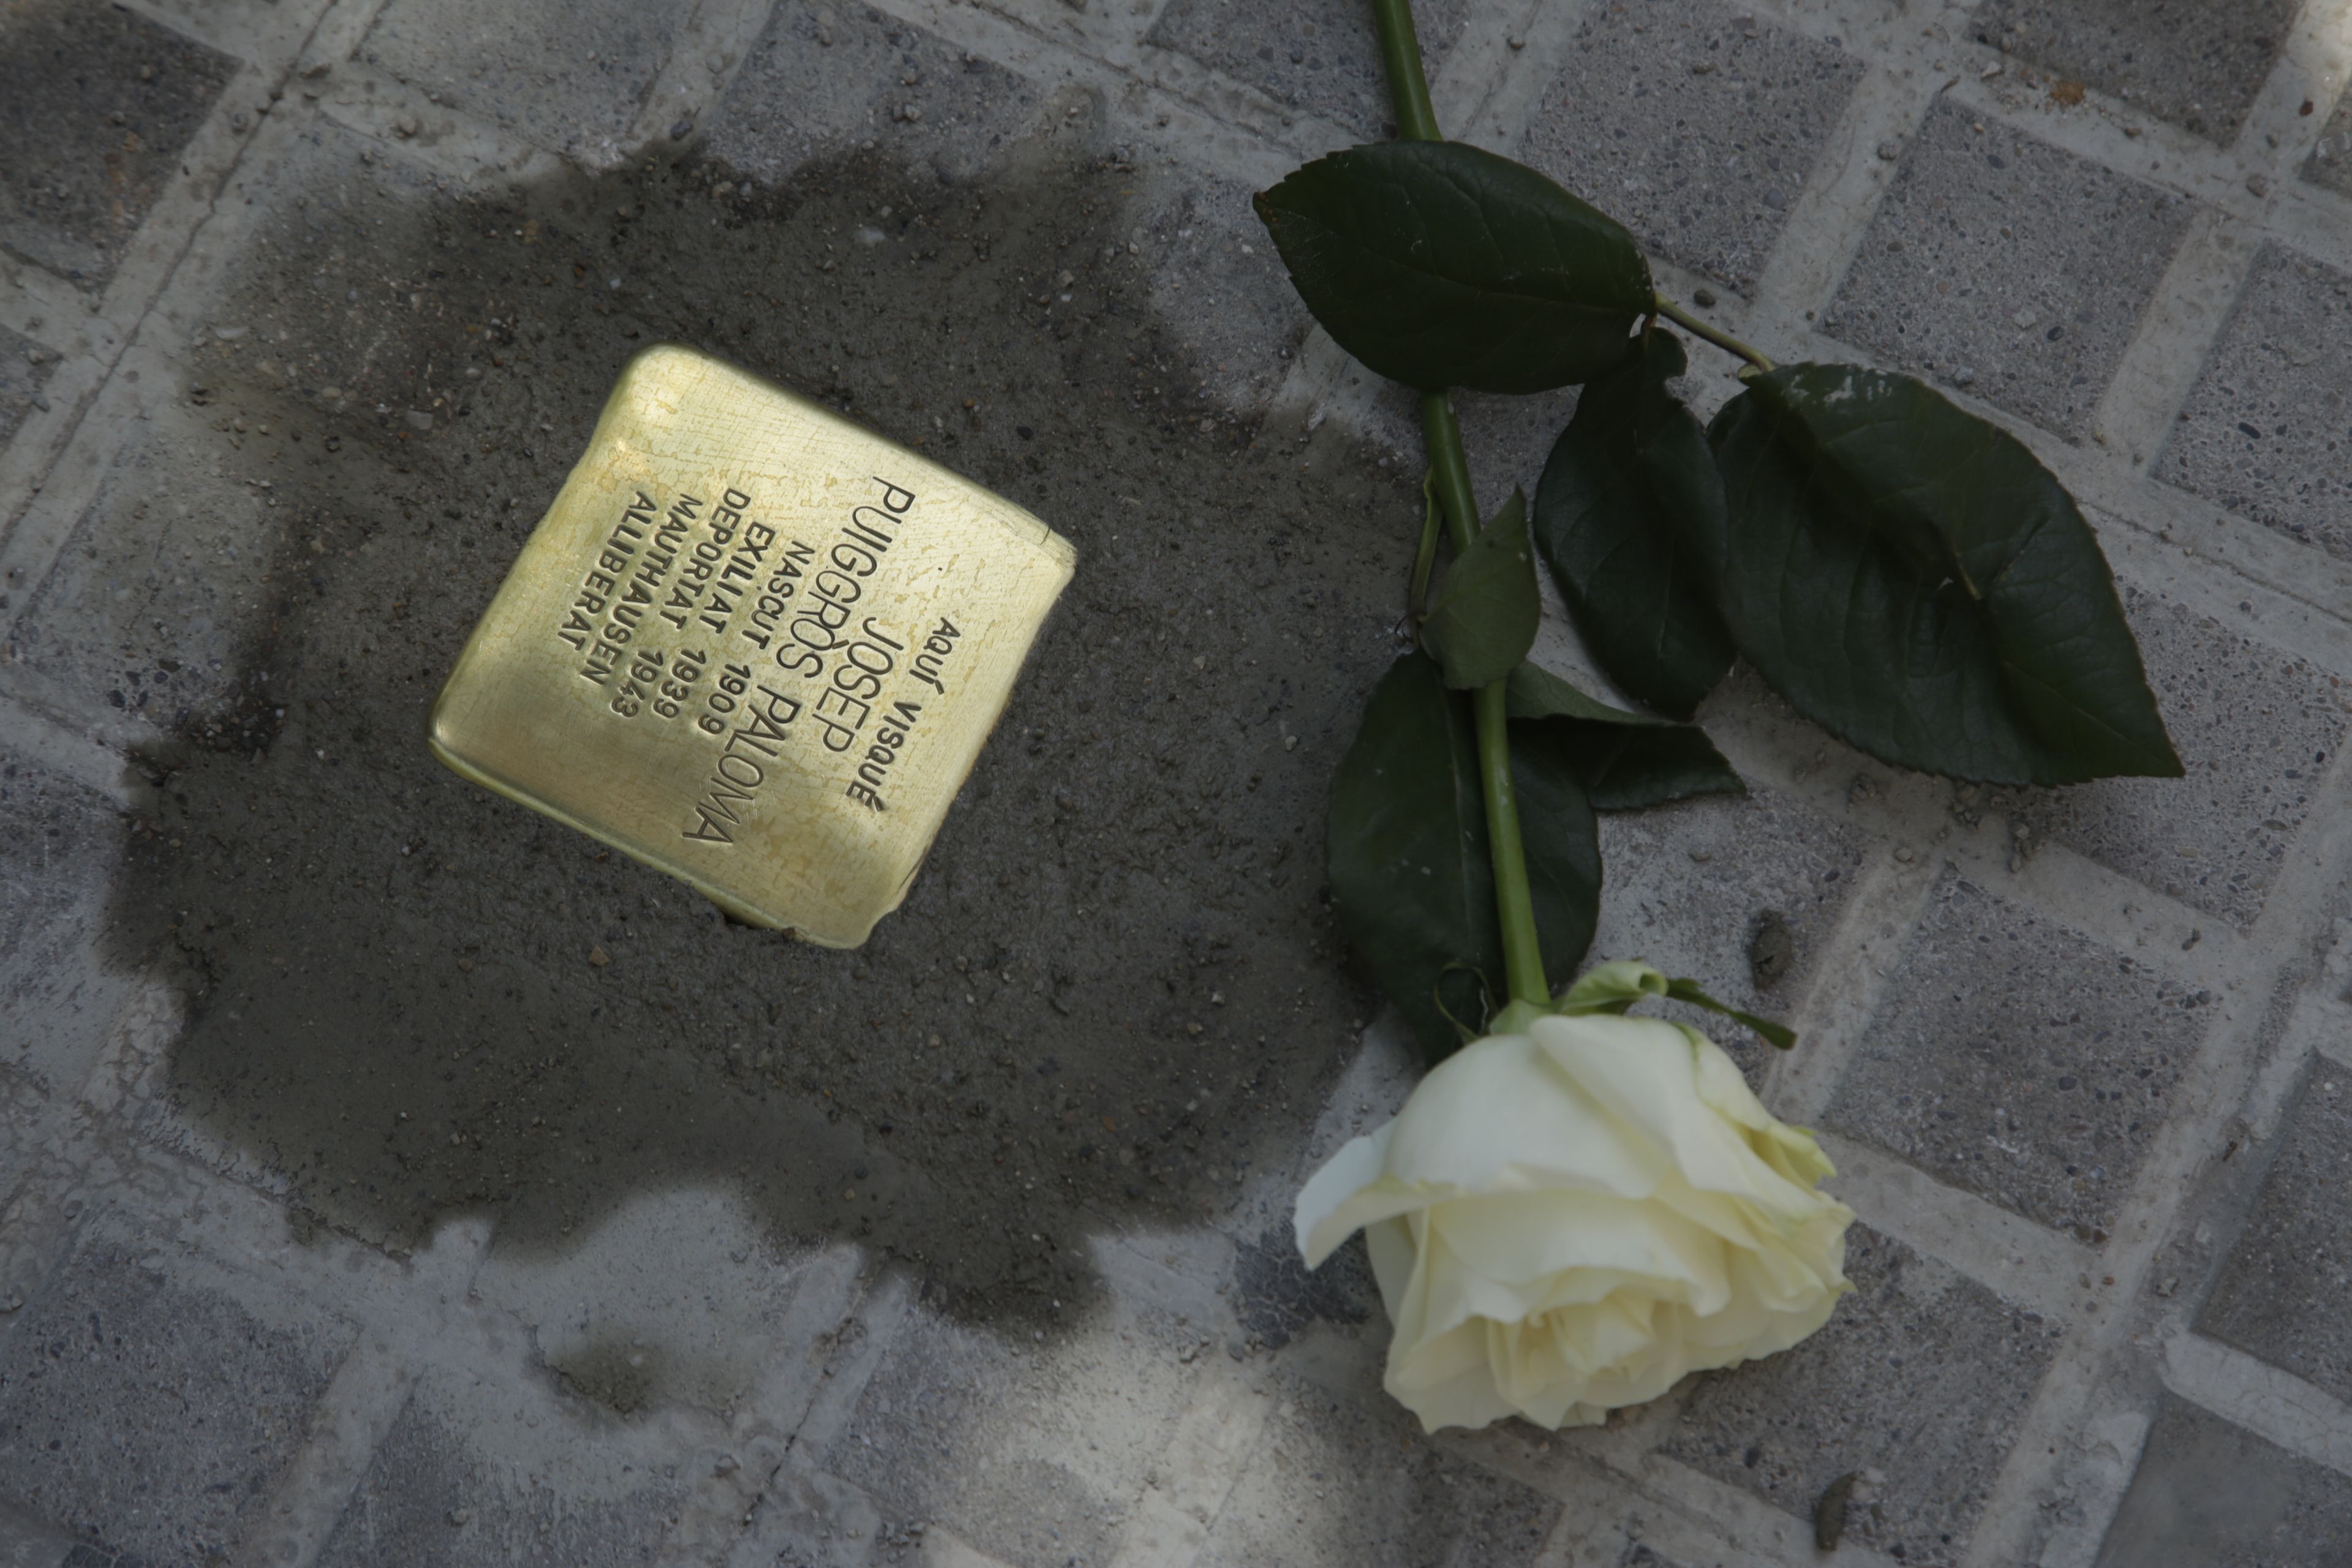 Sant Cugat ret homenatge als santcugatencs que van ser deportats a camps de concentració nazis. FOTO: Àngel Bravo